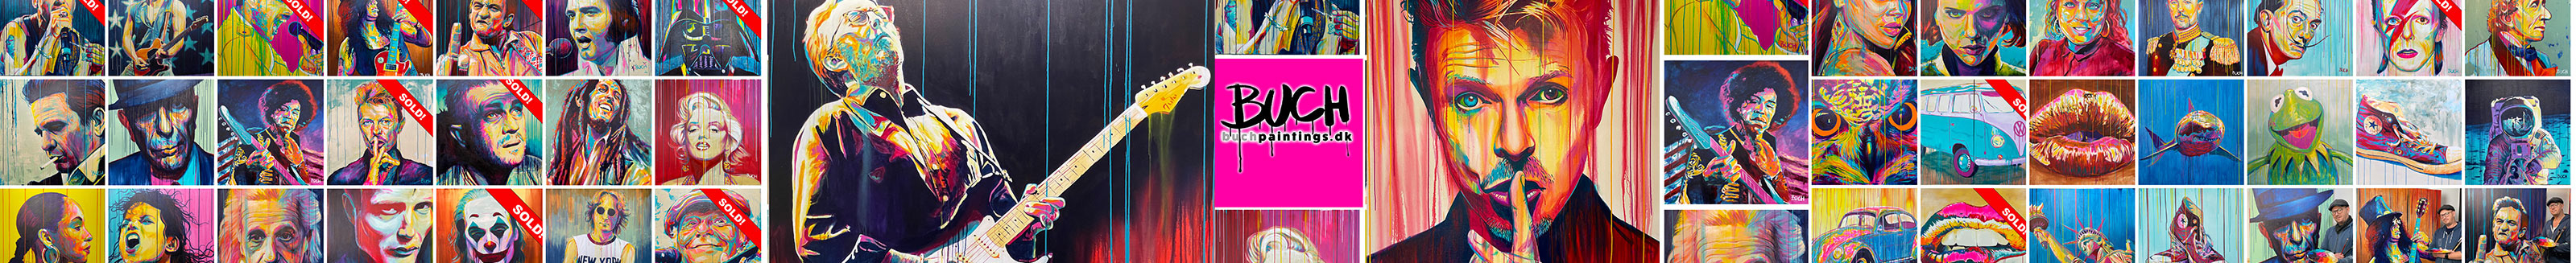 Banner de perfil de Allan Buch